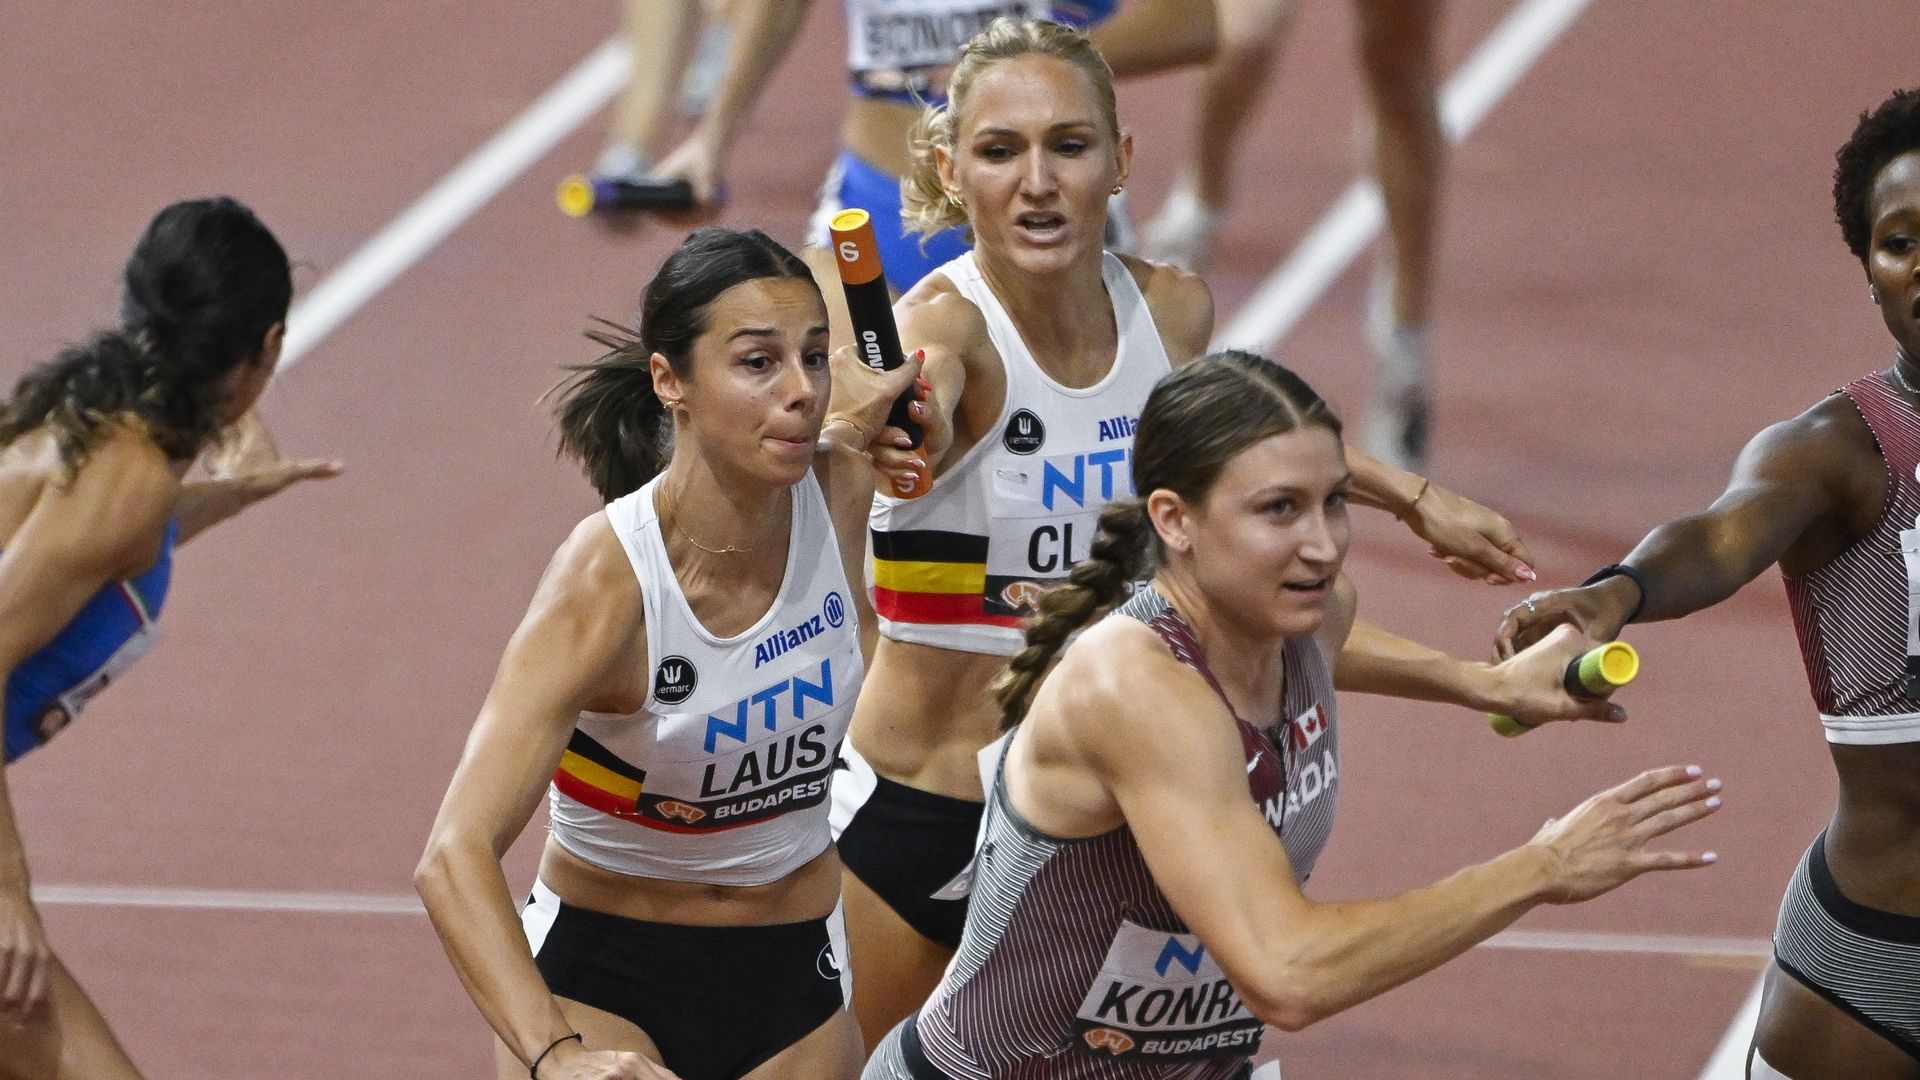 Mondiaux d'athlétisme : le programme des Belges à Budapest avec les  horaires de compétition 